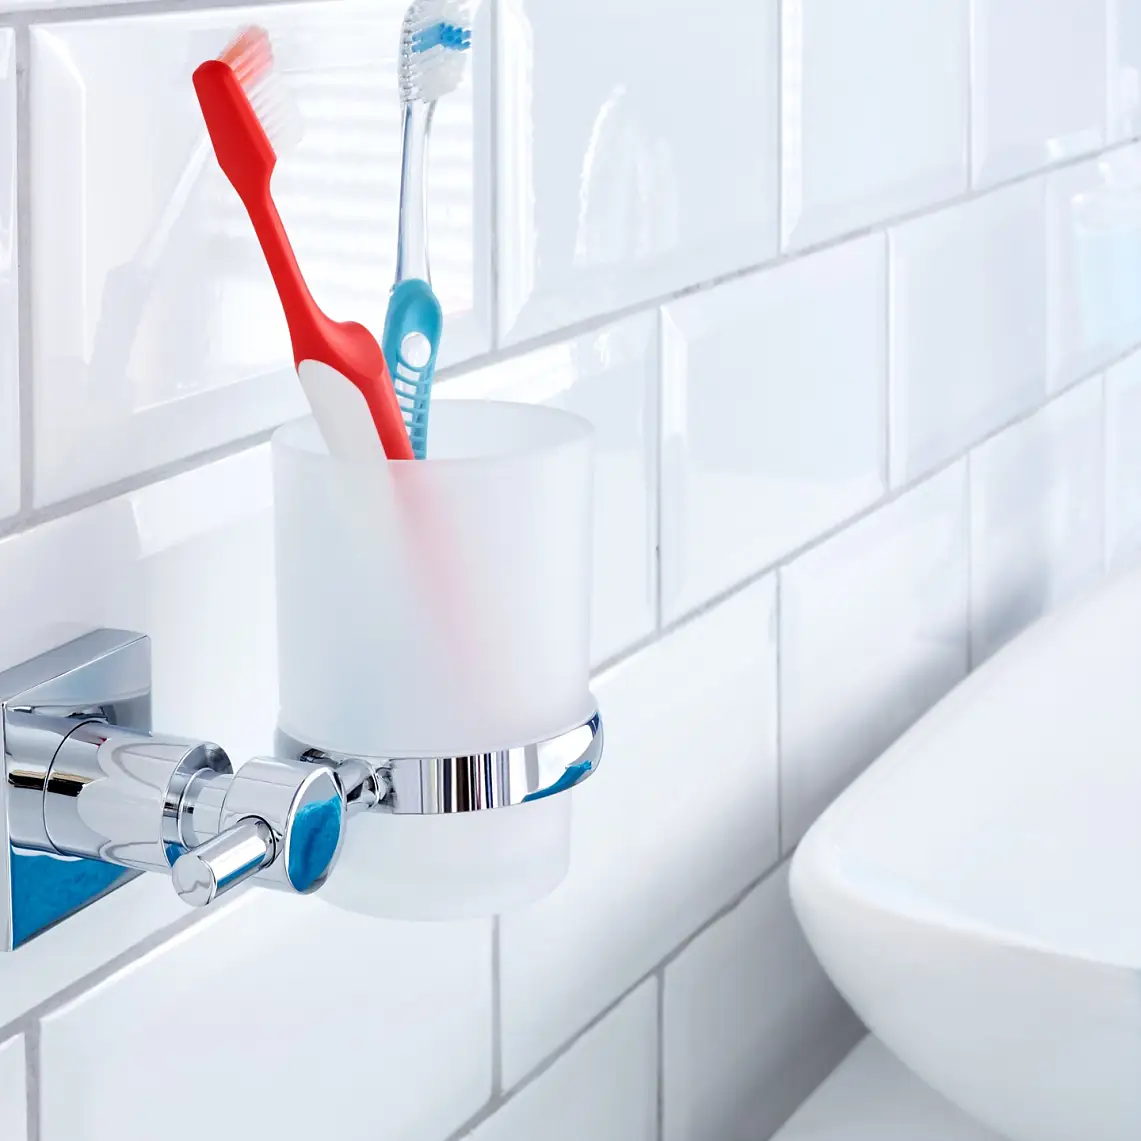 Lad ikke dit tandkrus optage plads på vasken. Opbevar det, hvor det ser bedst ud og hører til.